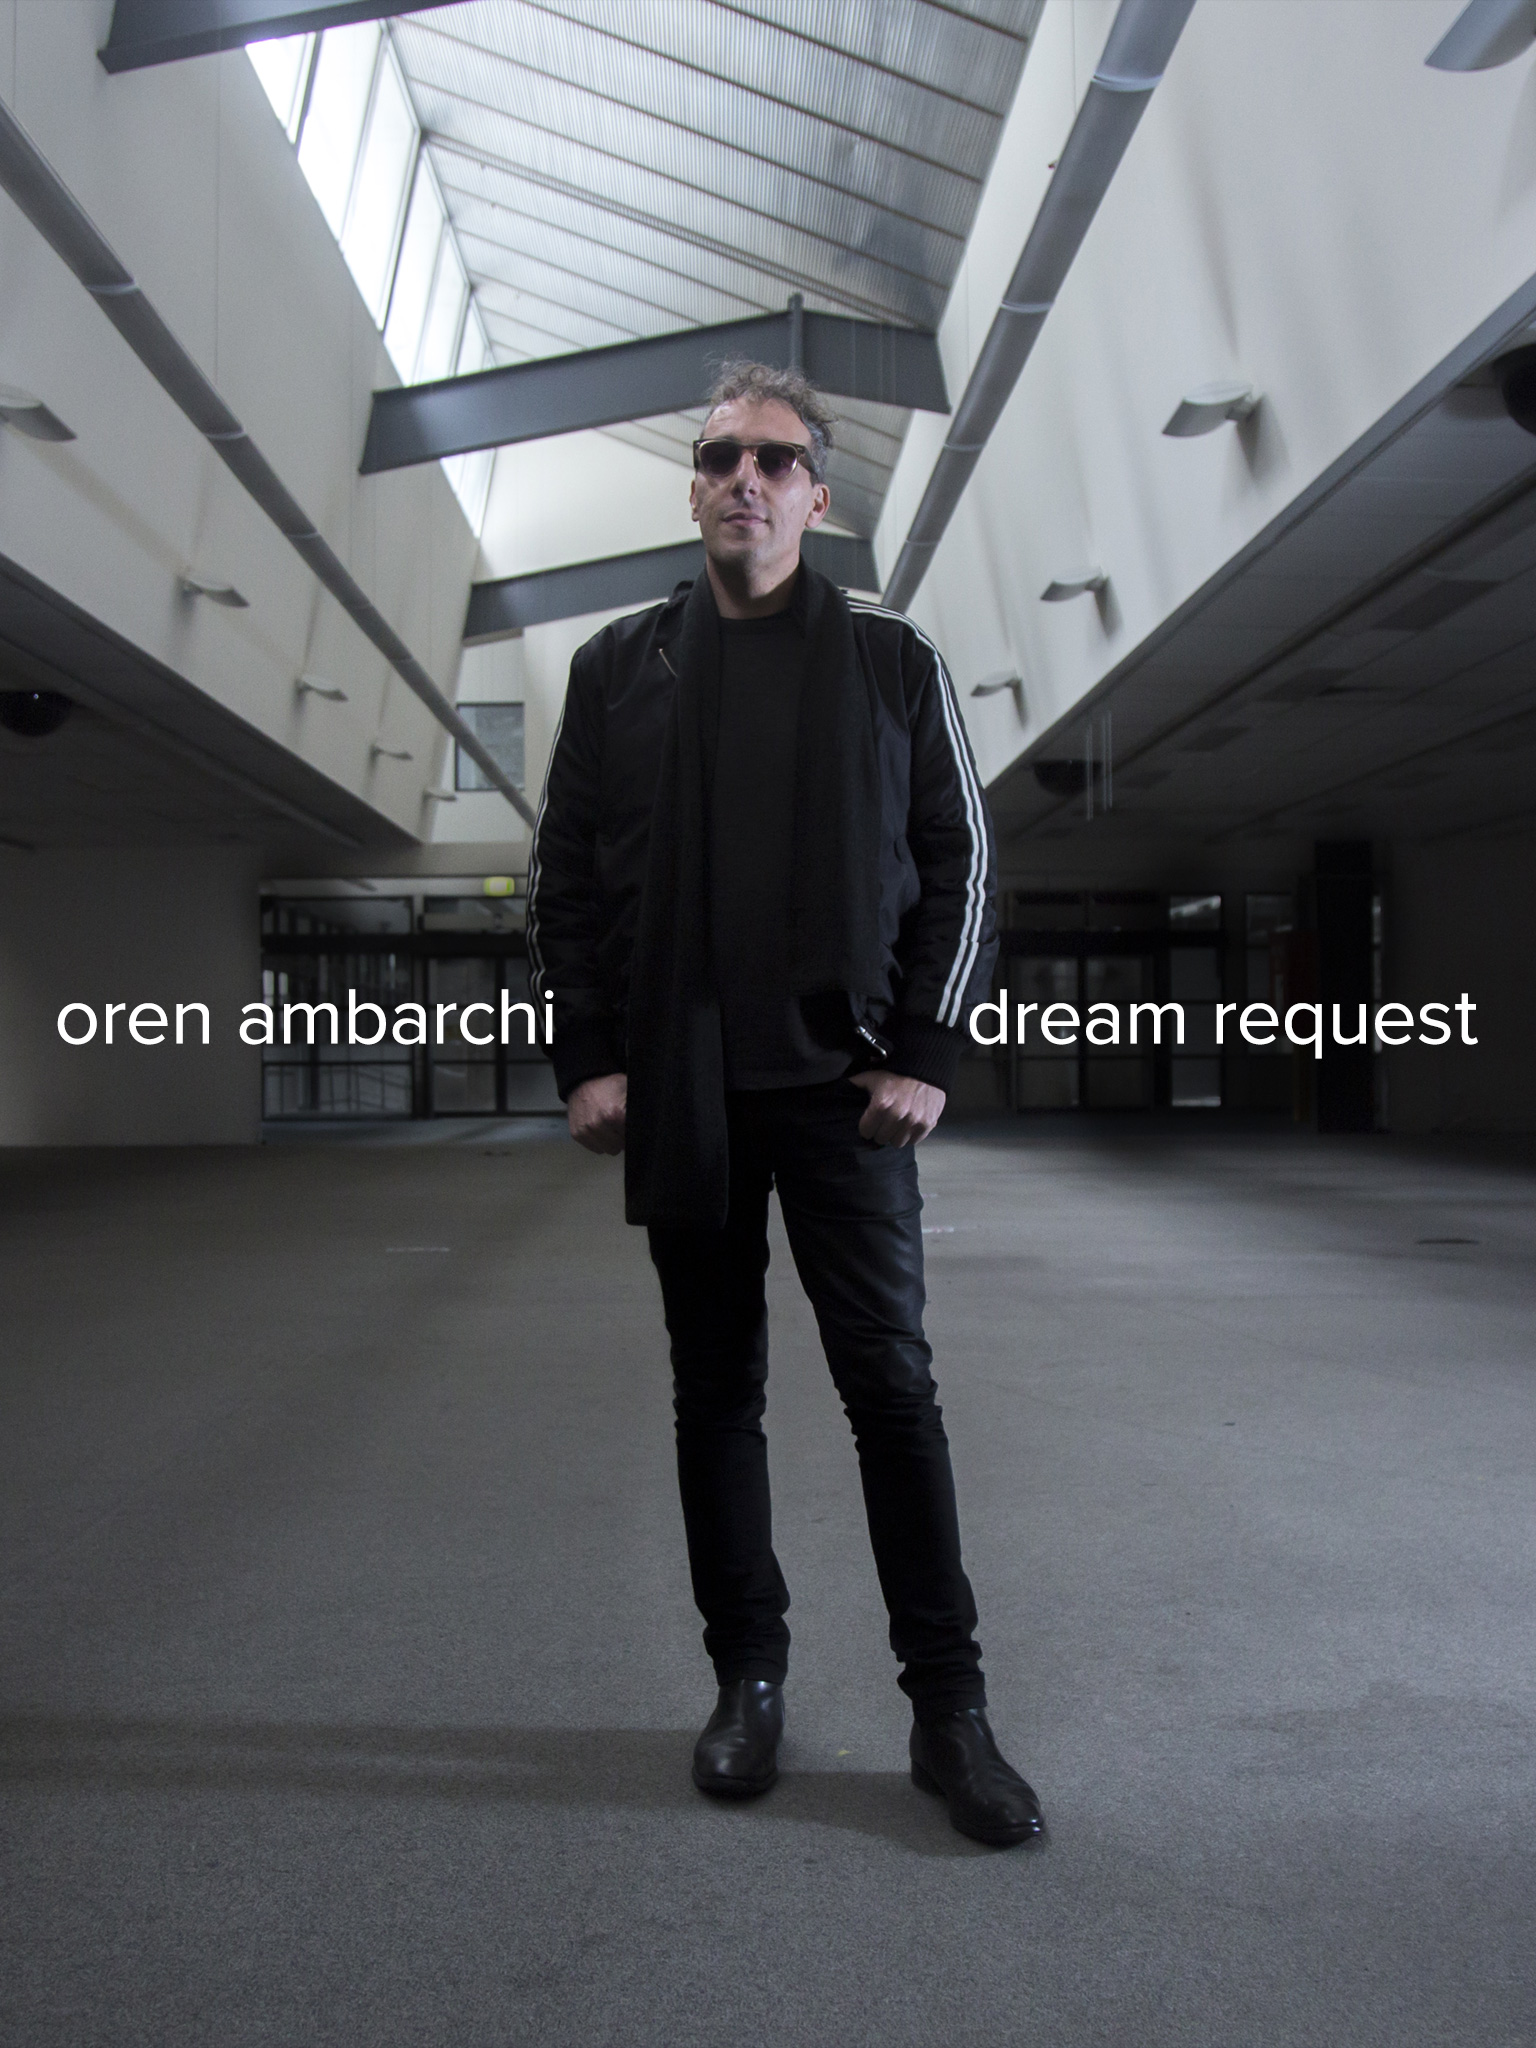 Oren Ambarchi: Dream request